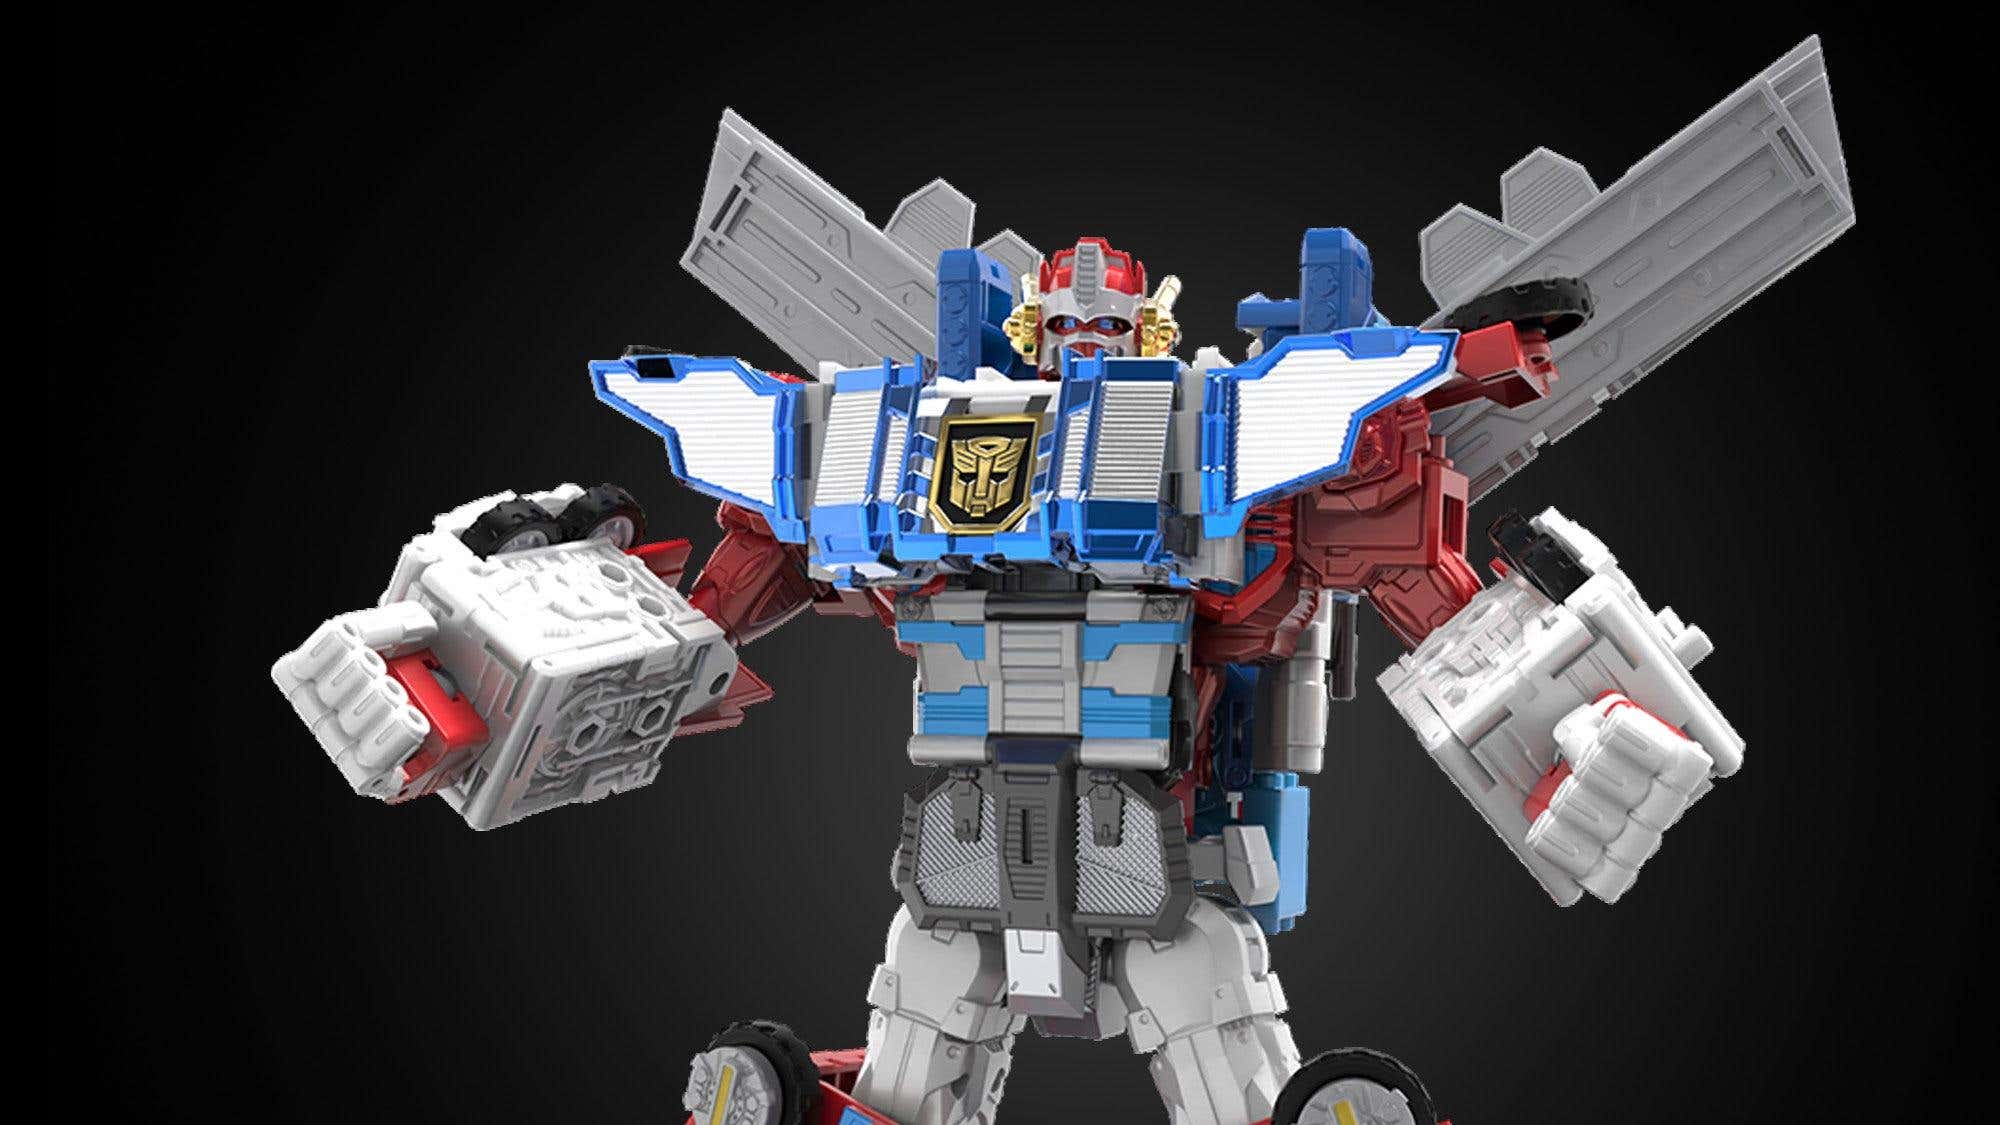 Optimus Prime, Yeni Transformers HasLab Projesinde Ultra Güncelleme Aldı başlıklı makalenin resmi